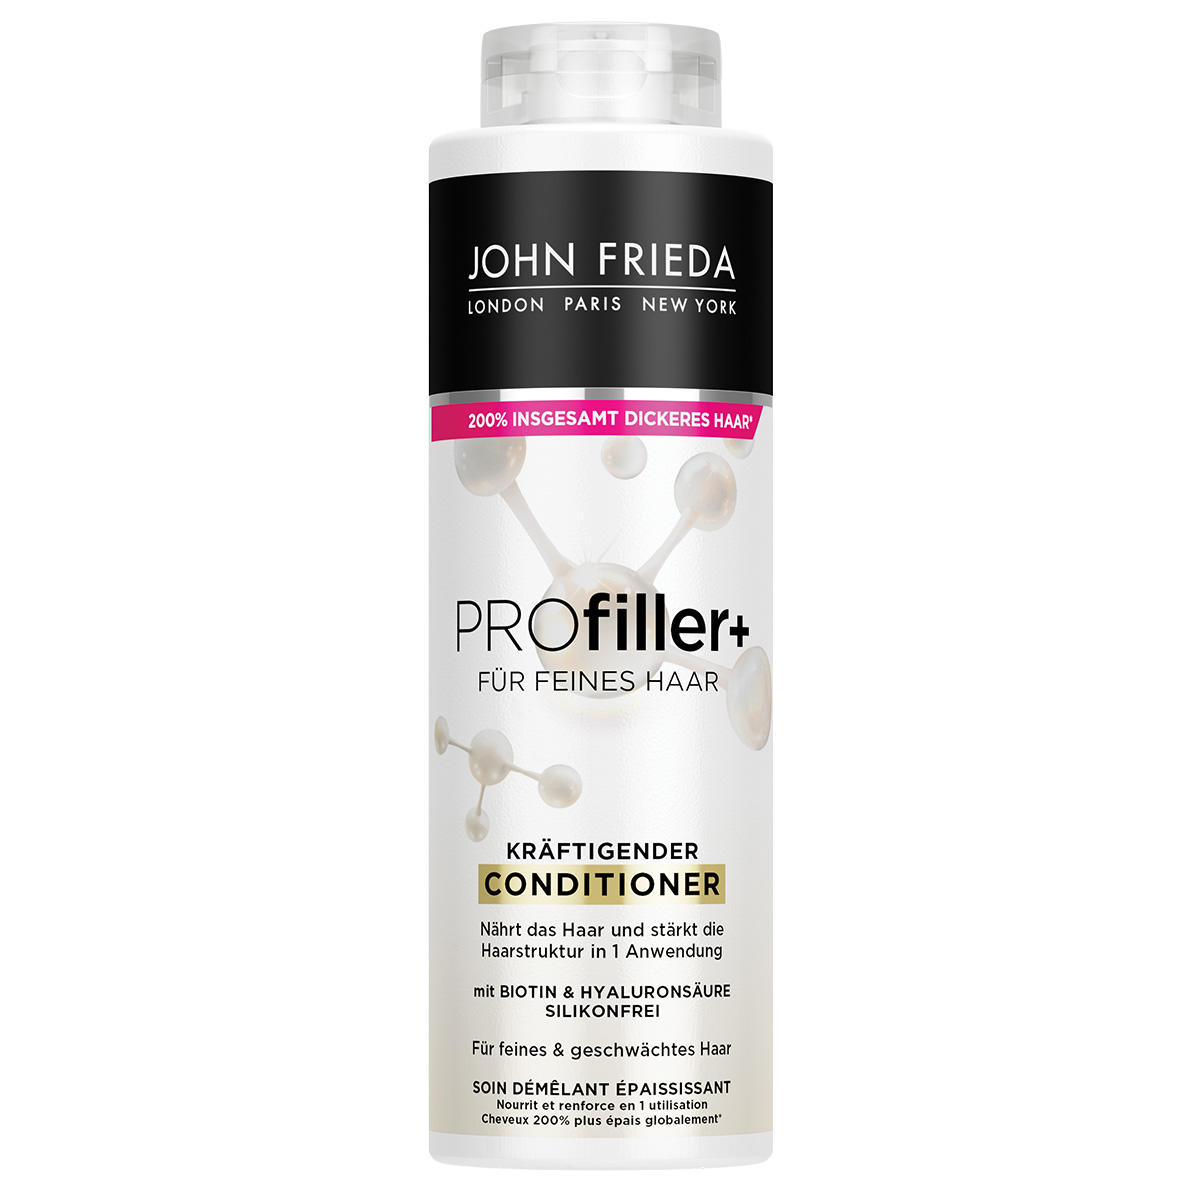 JOHN FRIEDA PROfiller+ Kräftigender Conditioner 500 ml - 1